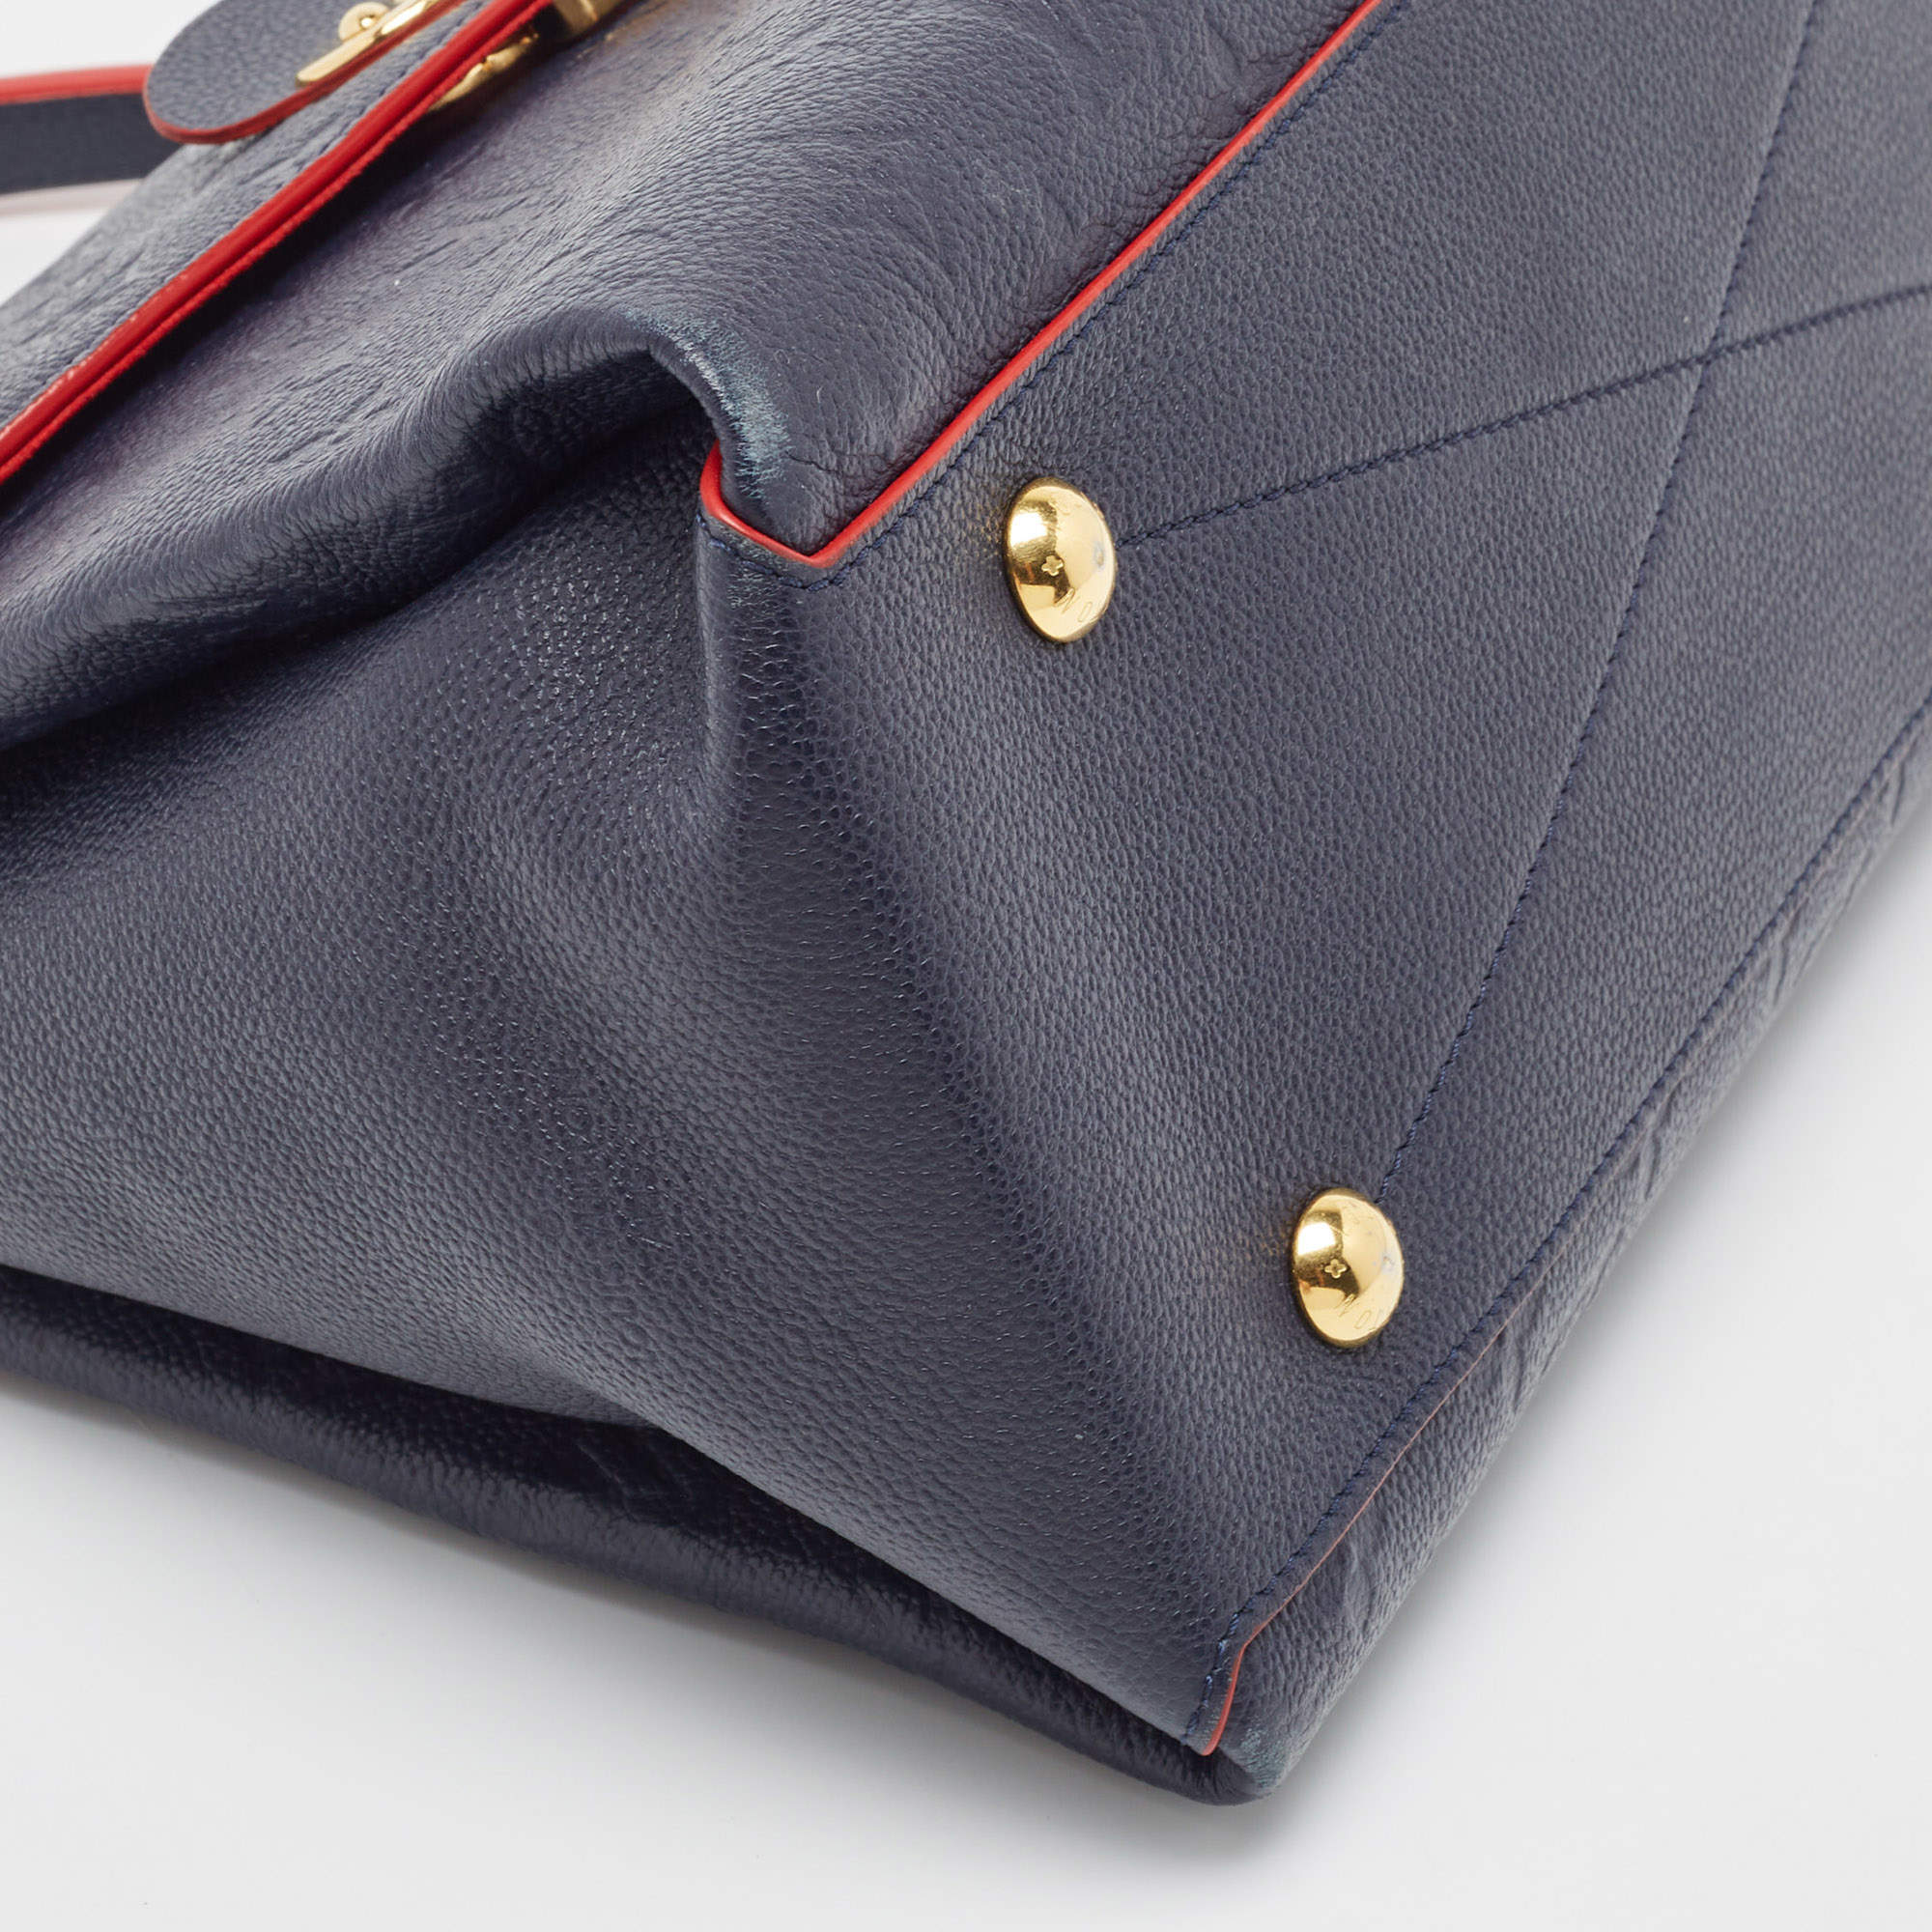 Louis Vuitton Celeste Monogram Empreinte Leather Georges MM Bag